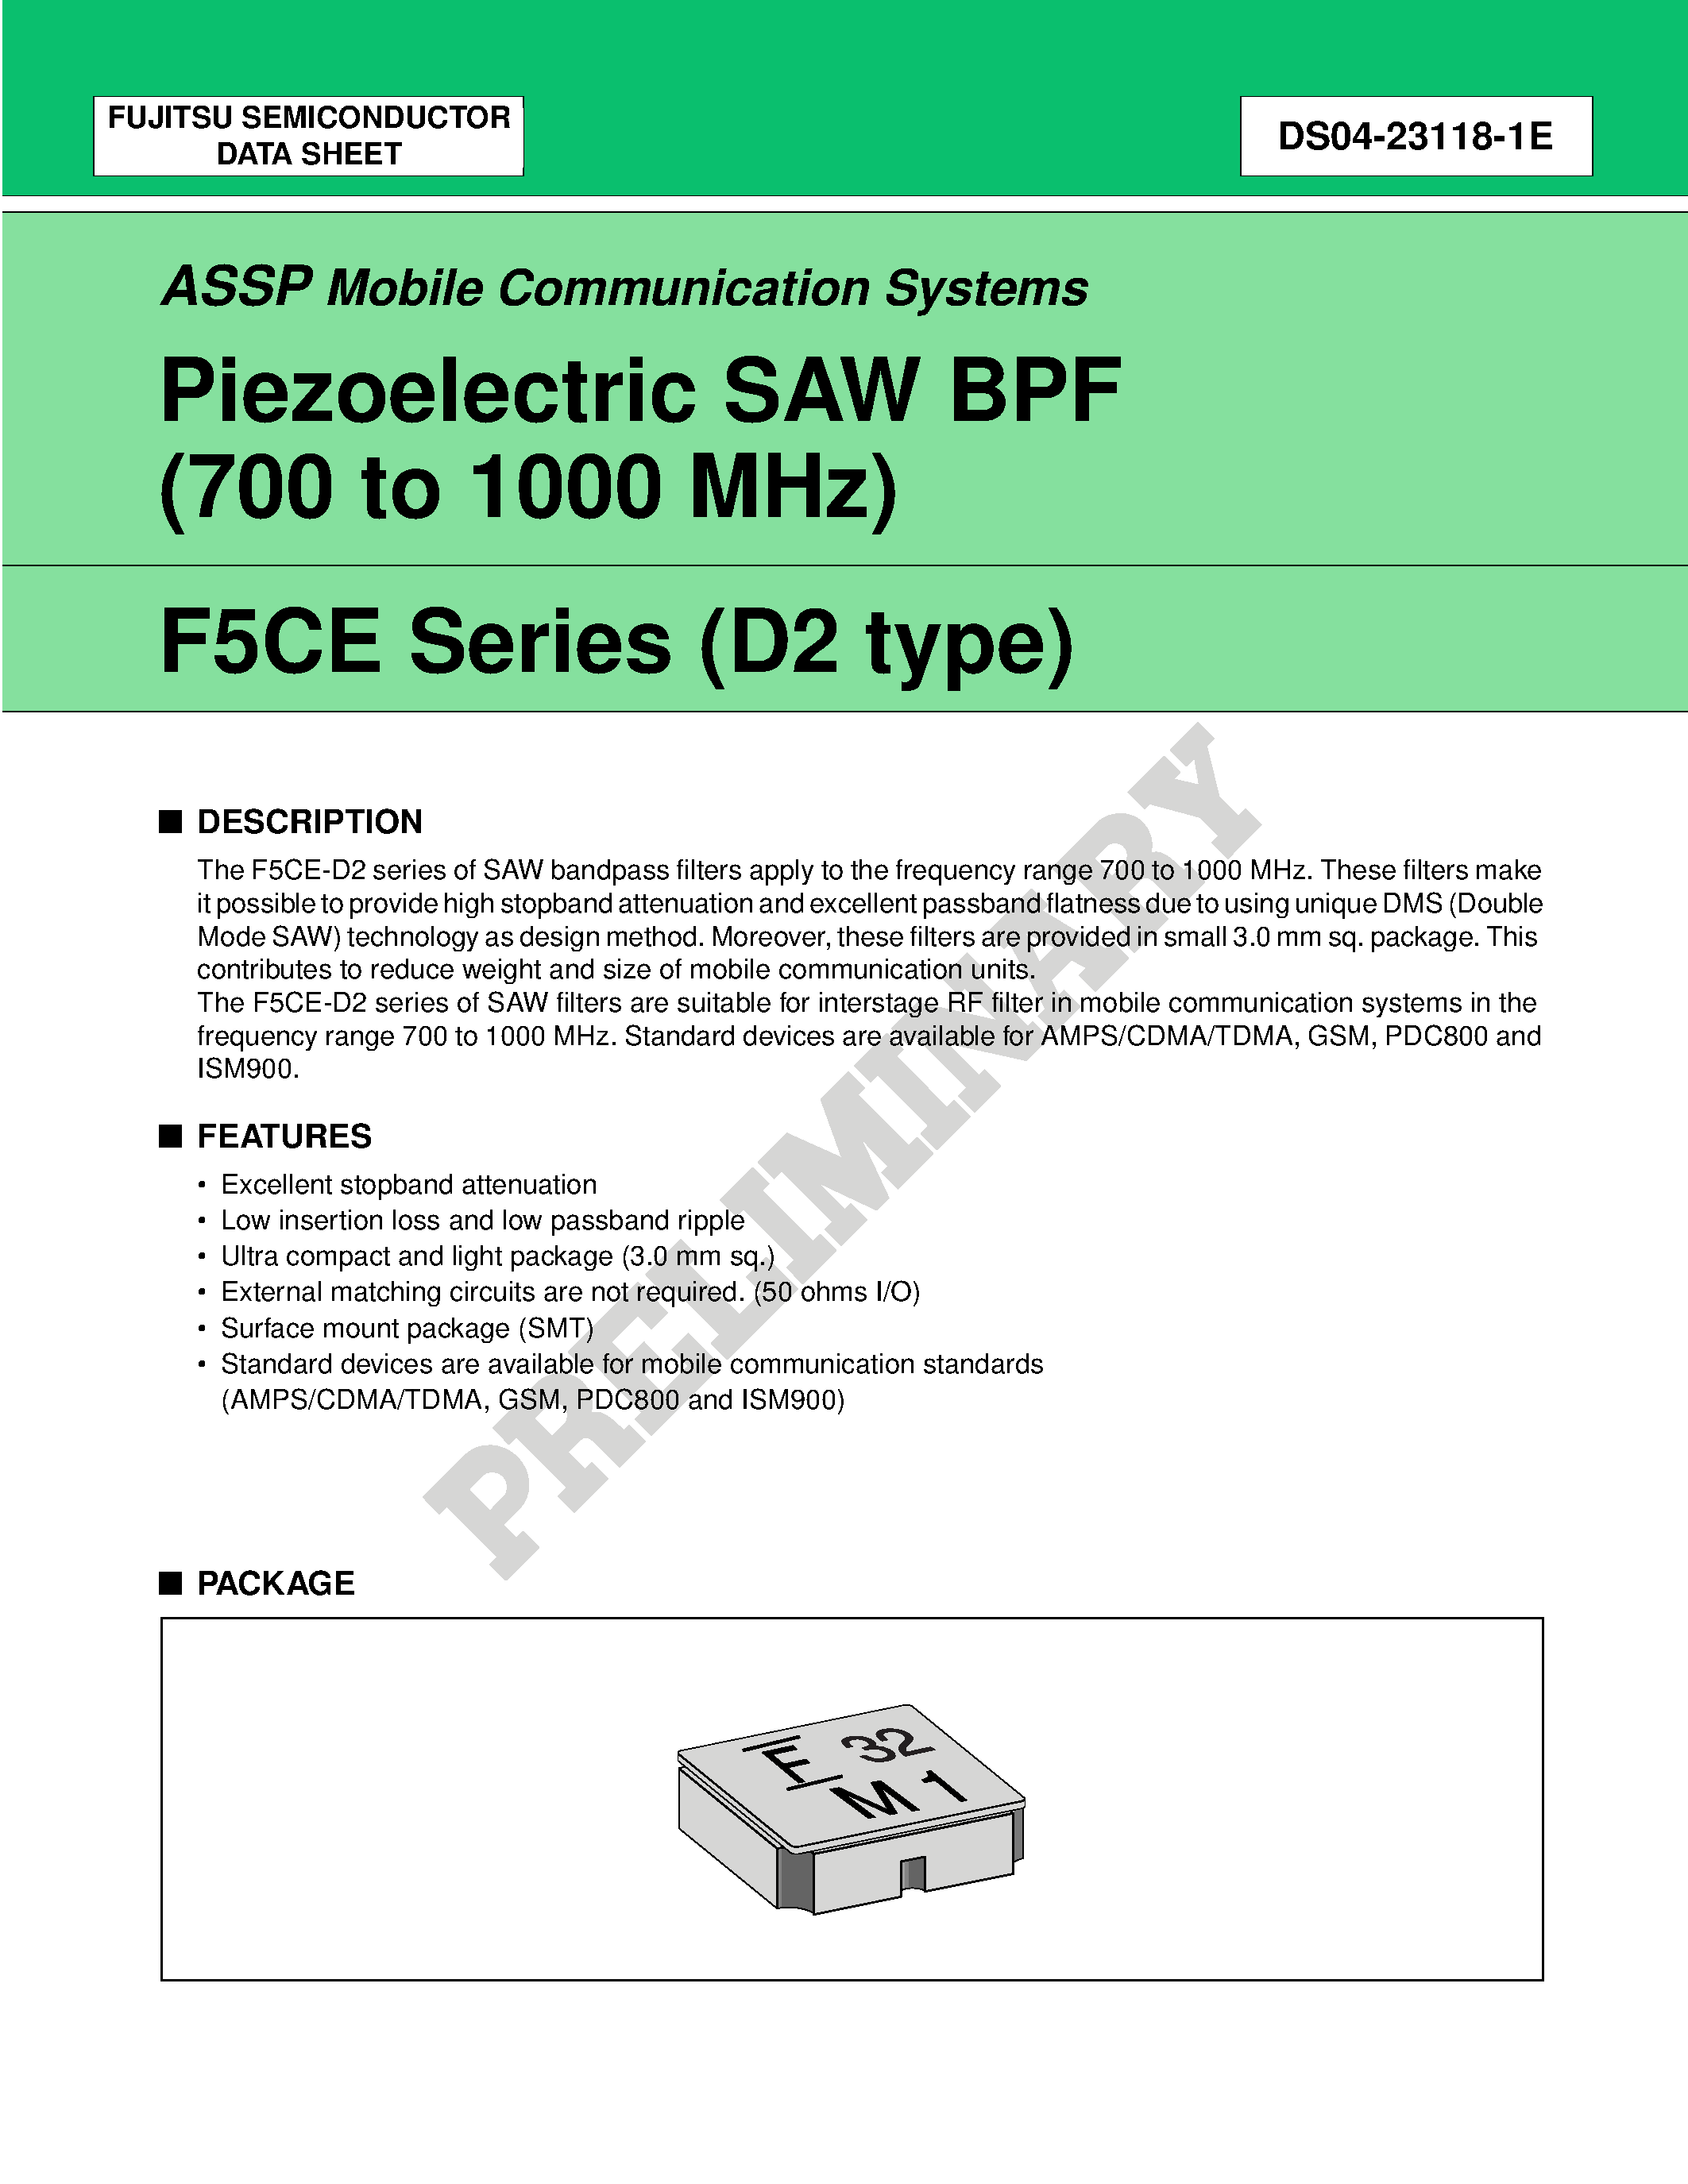 Datasheet FAR-F5CE-897M50-K226-U - Piezoelectric SAW BPF (700 to 1700 MHz) page 1